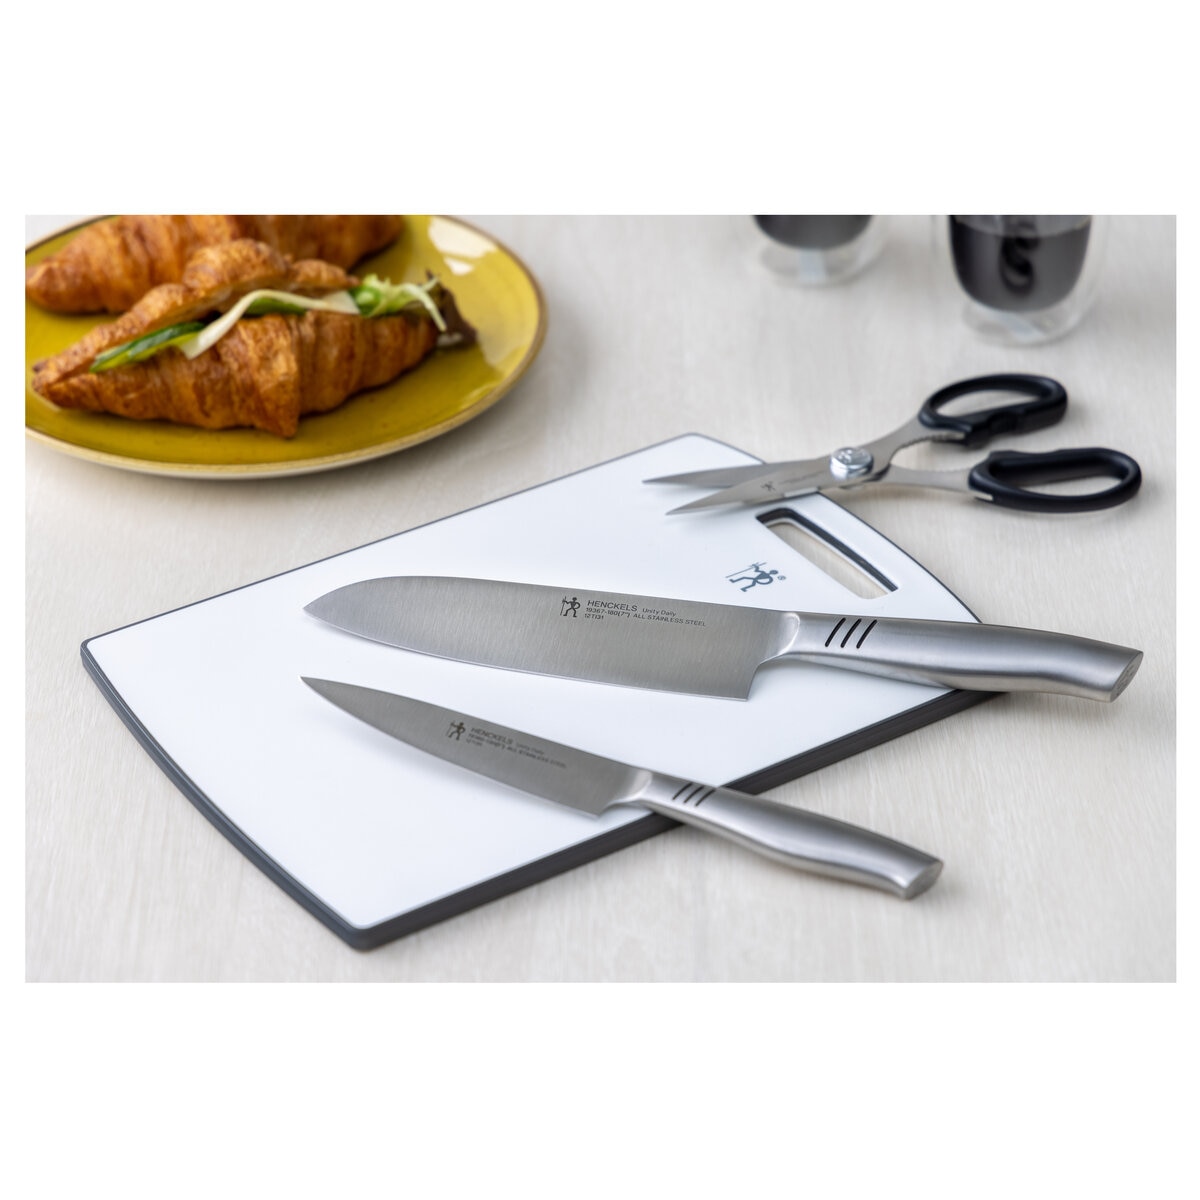 【新品】ヘンケルス限定品ナイフ5点セットツヴィリングまな板キッチンハサミetc